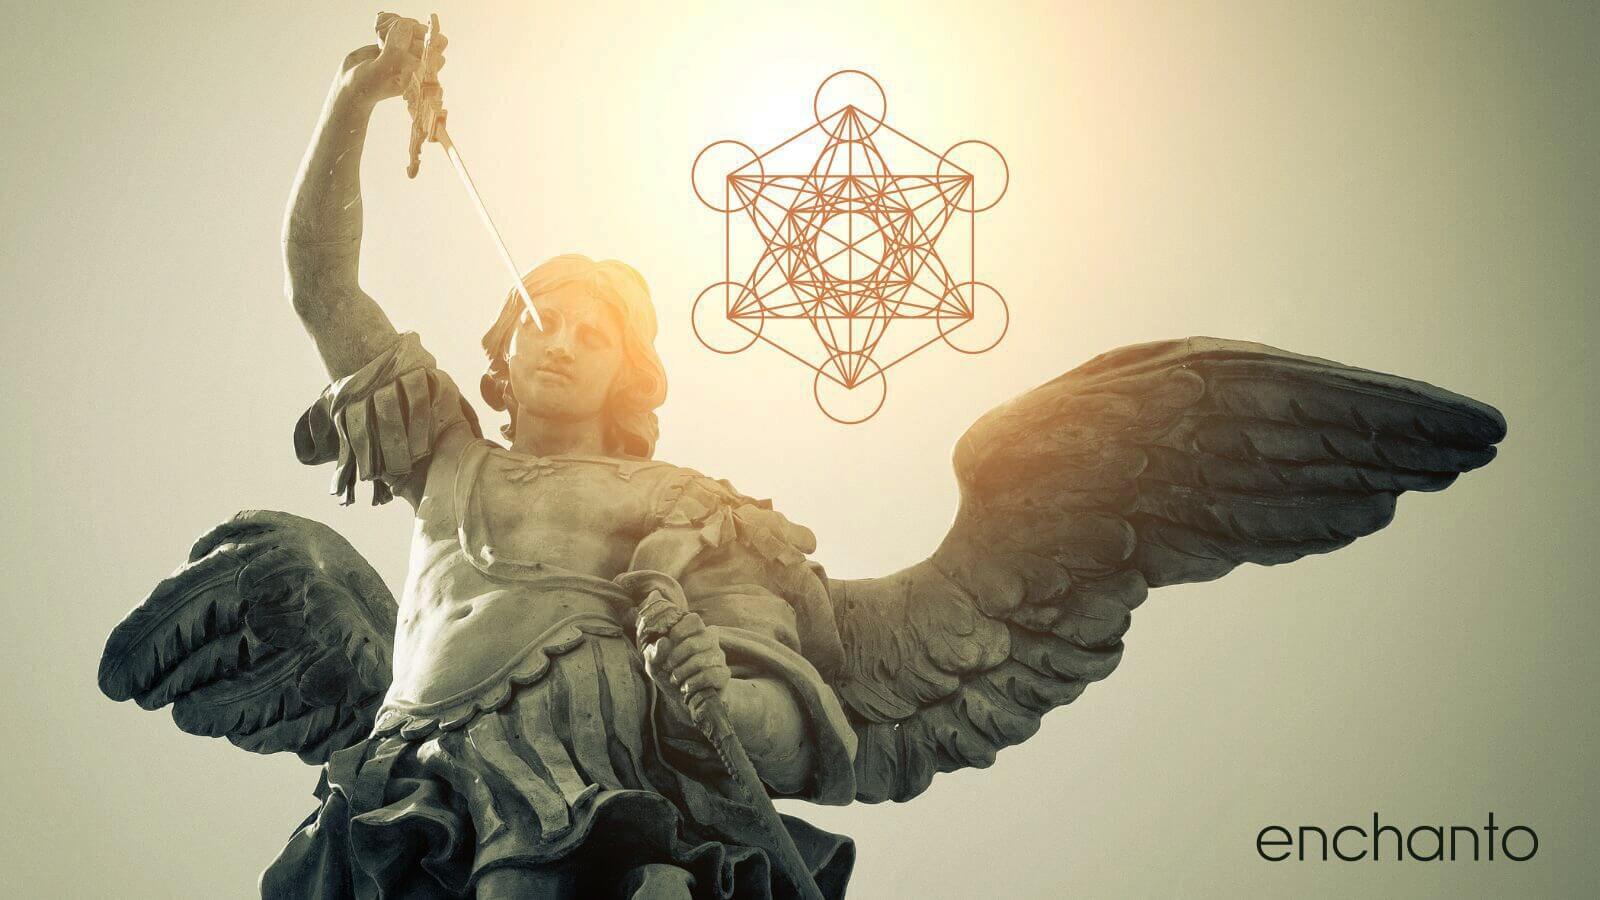 Eine Statue des Engels Erzengel Metatron mit Flügeln und dem Wort Enchanto.